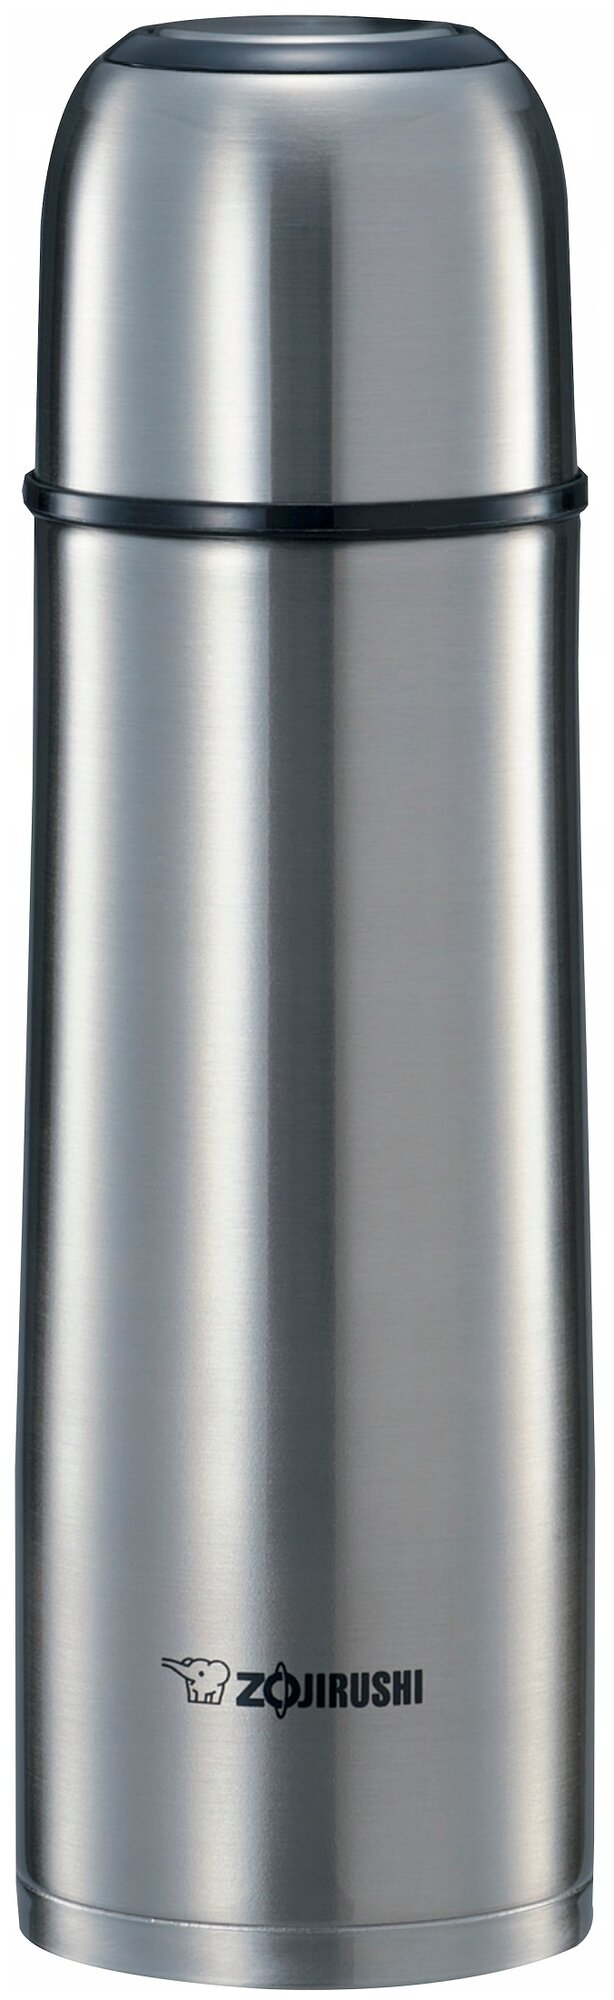 Термос Zojirushi Sv-gr (0,5 литра), стальной Sv-gr50-xa .